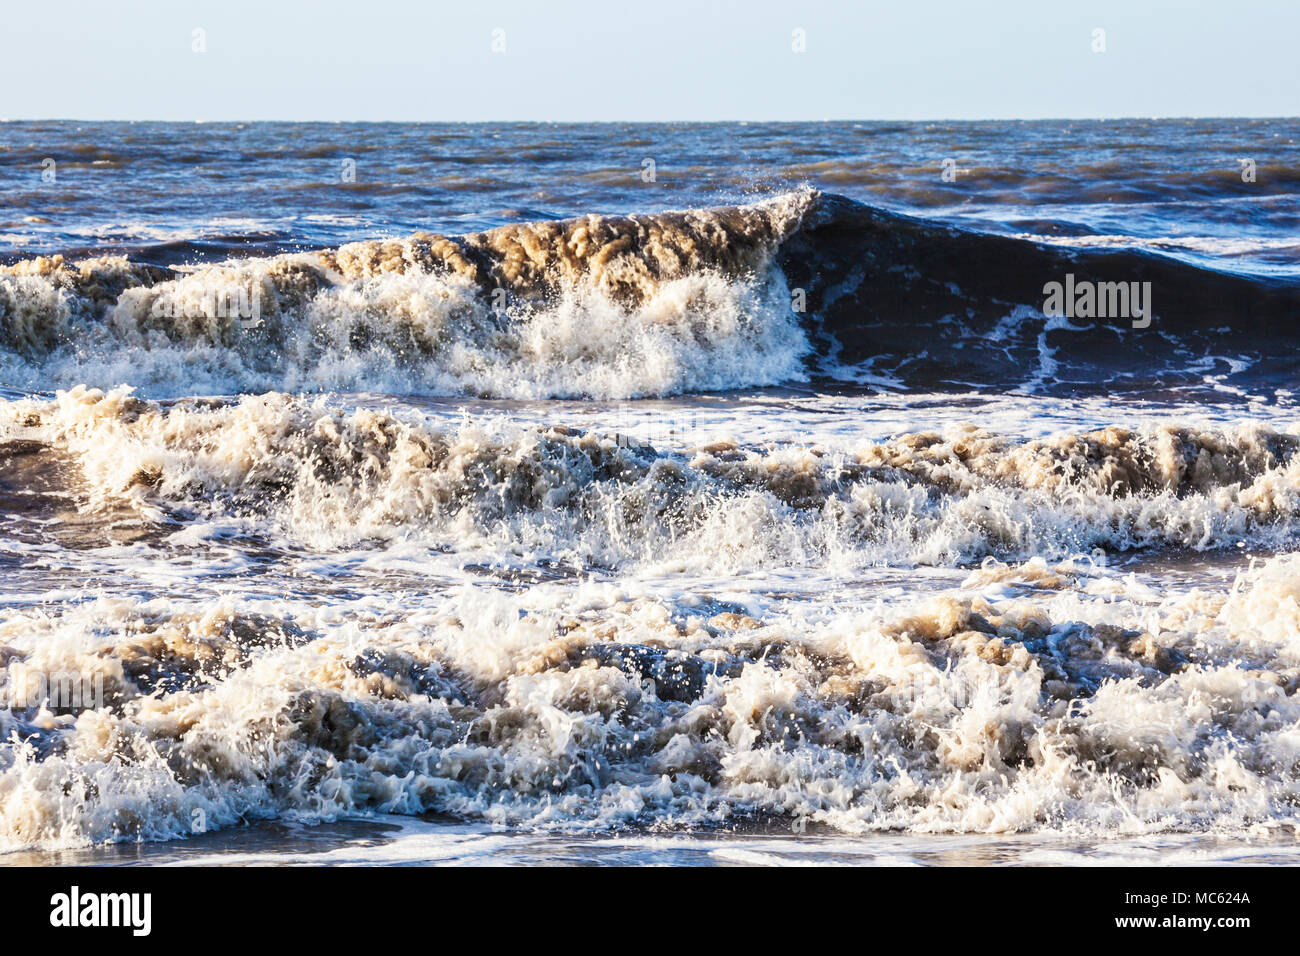 Waves crashing against the shore. Stock Photo